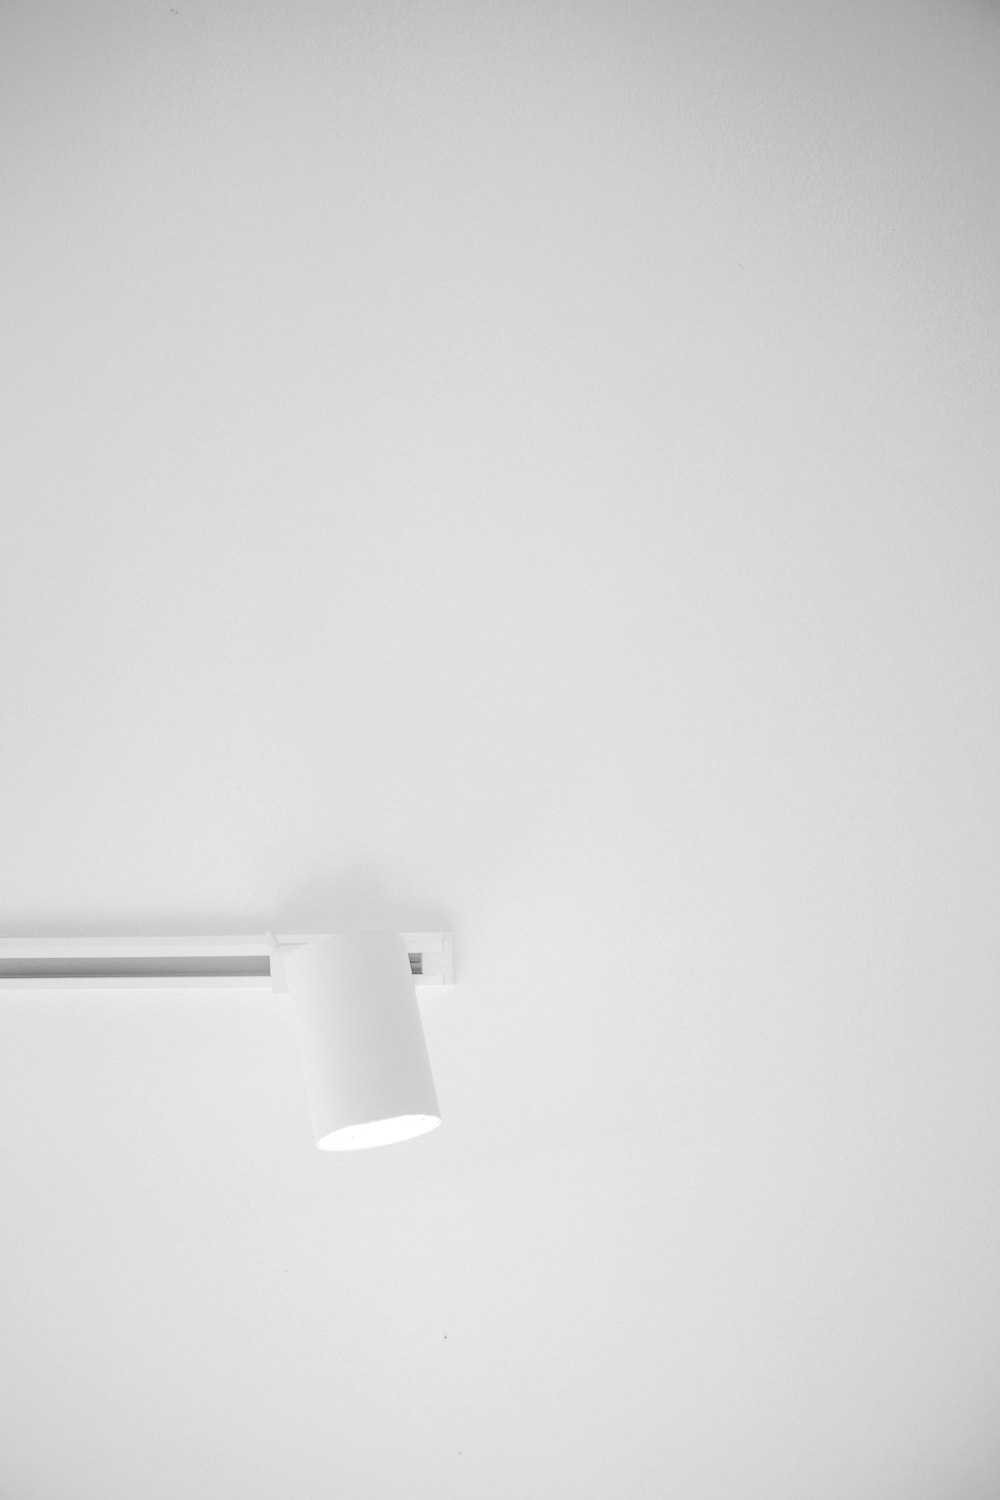 una foto in bianco e nero di una plafoniera